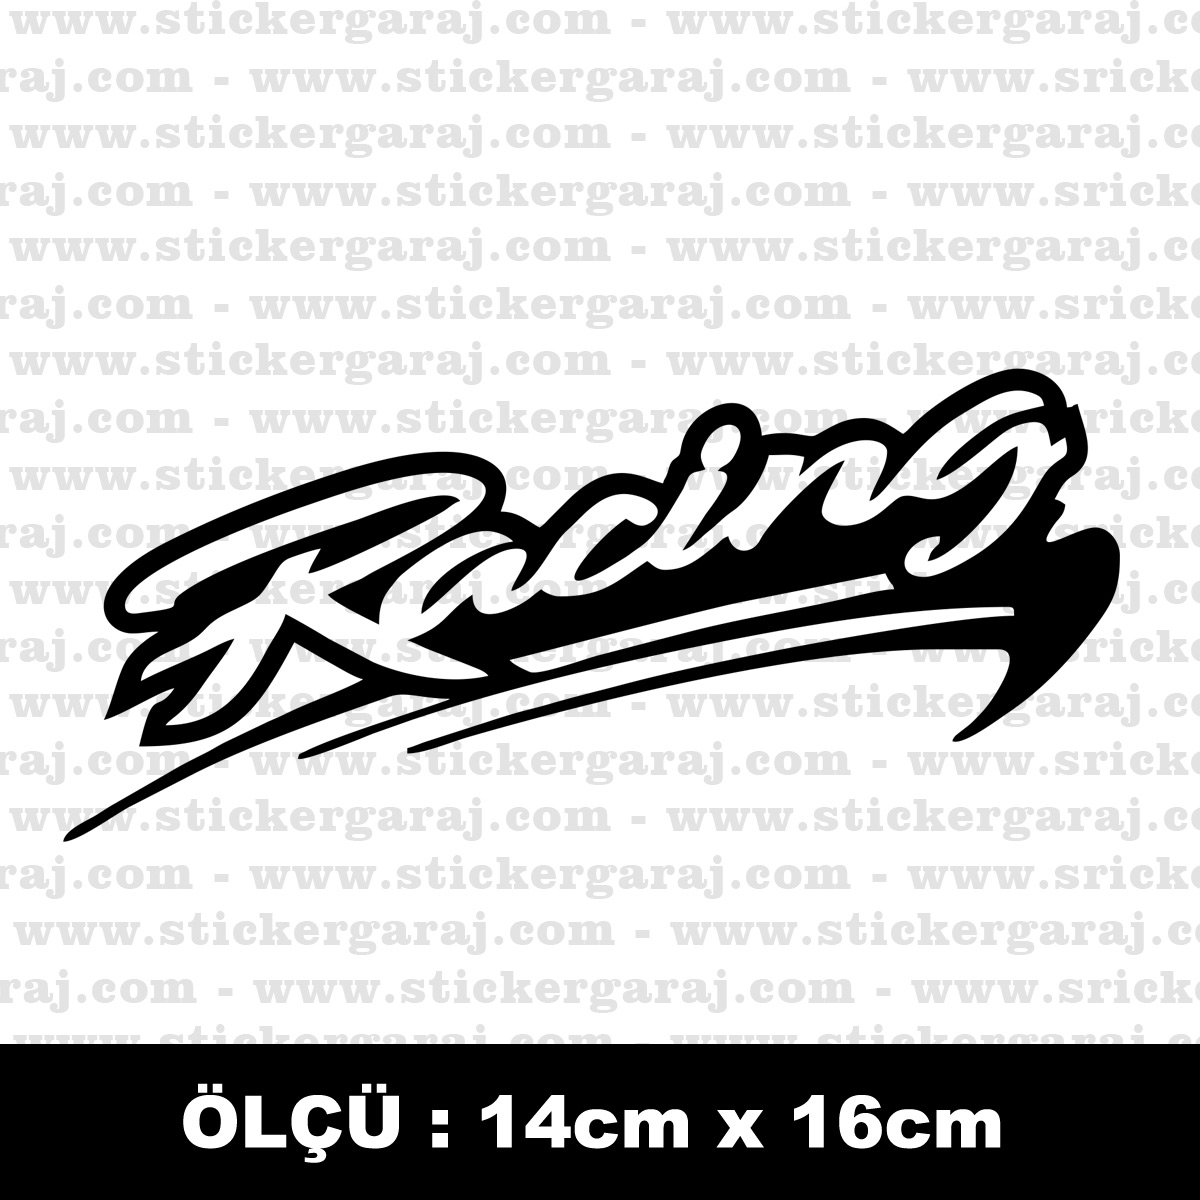 Racing yaris hiz sticker - Racing yarış hız sticker